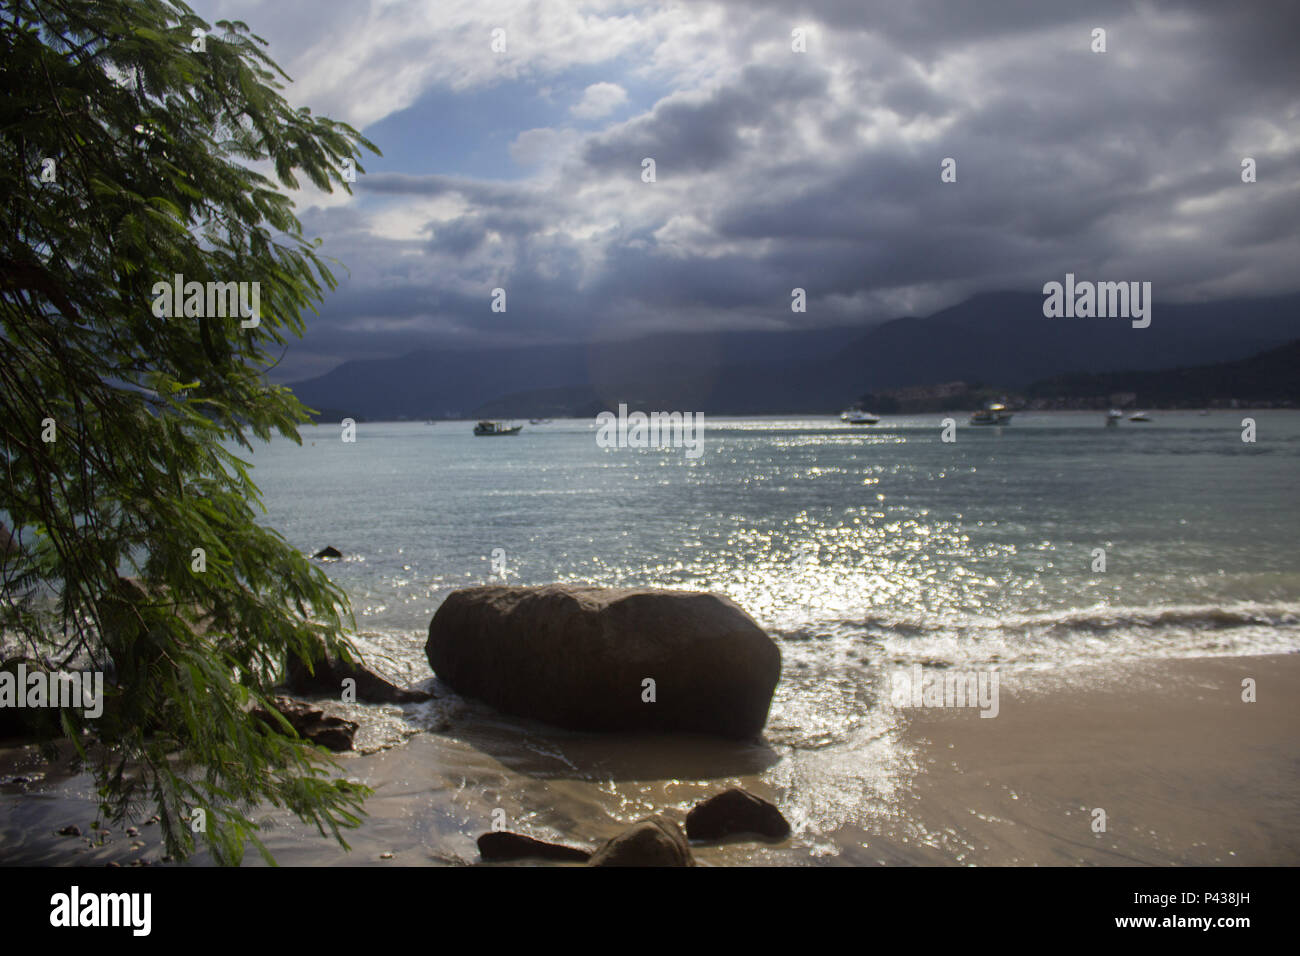 Rochas e pedras em praia ensolarada com barcos navegando no mar ao longe em Ubatuba, SP, Brasil. Stock Photo